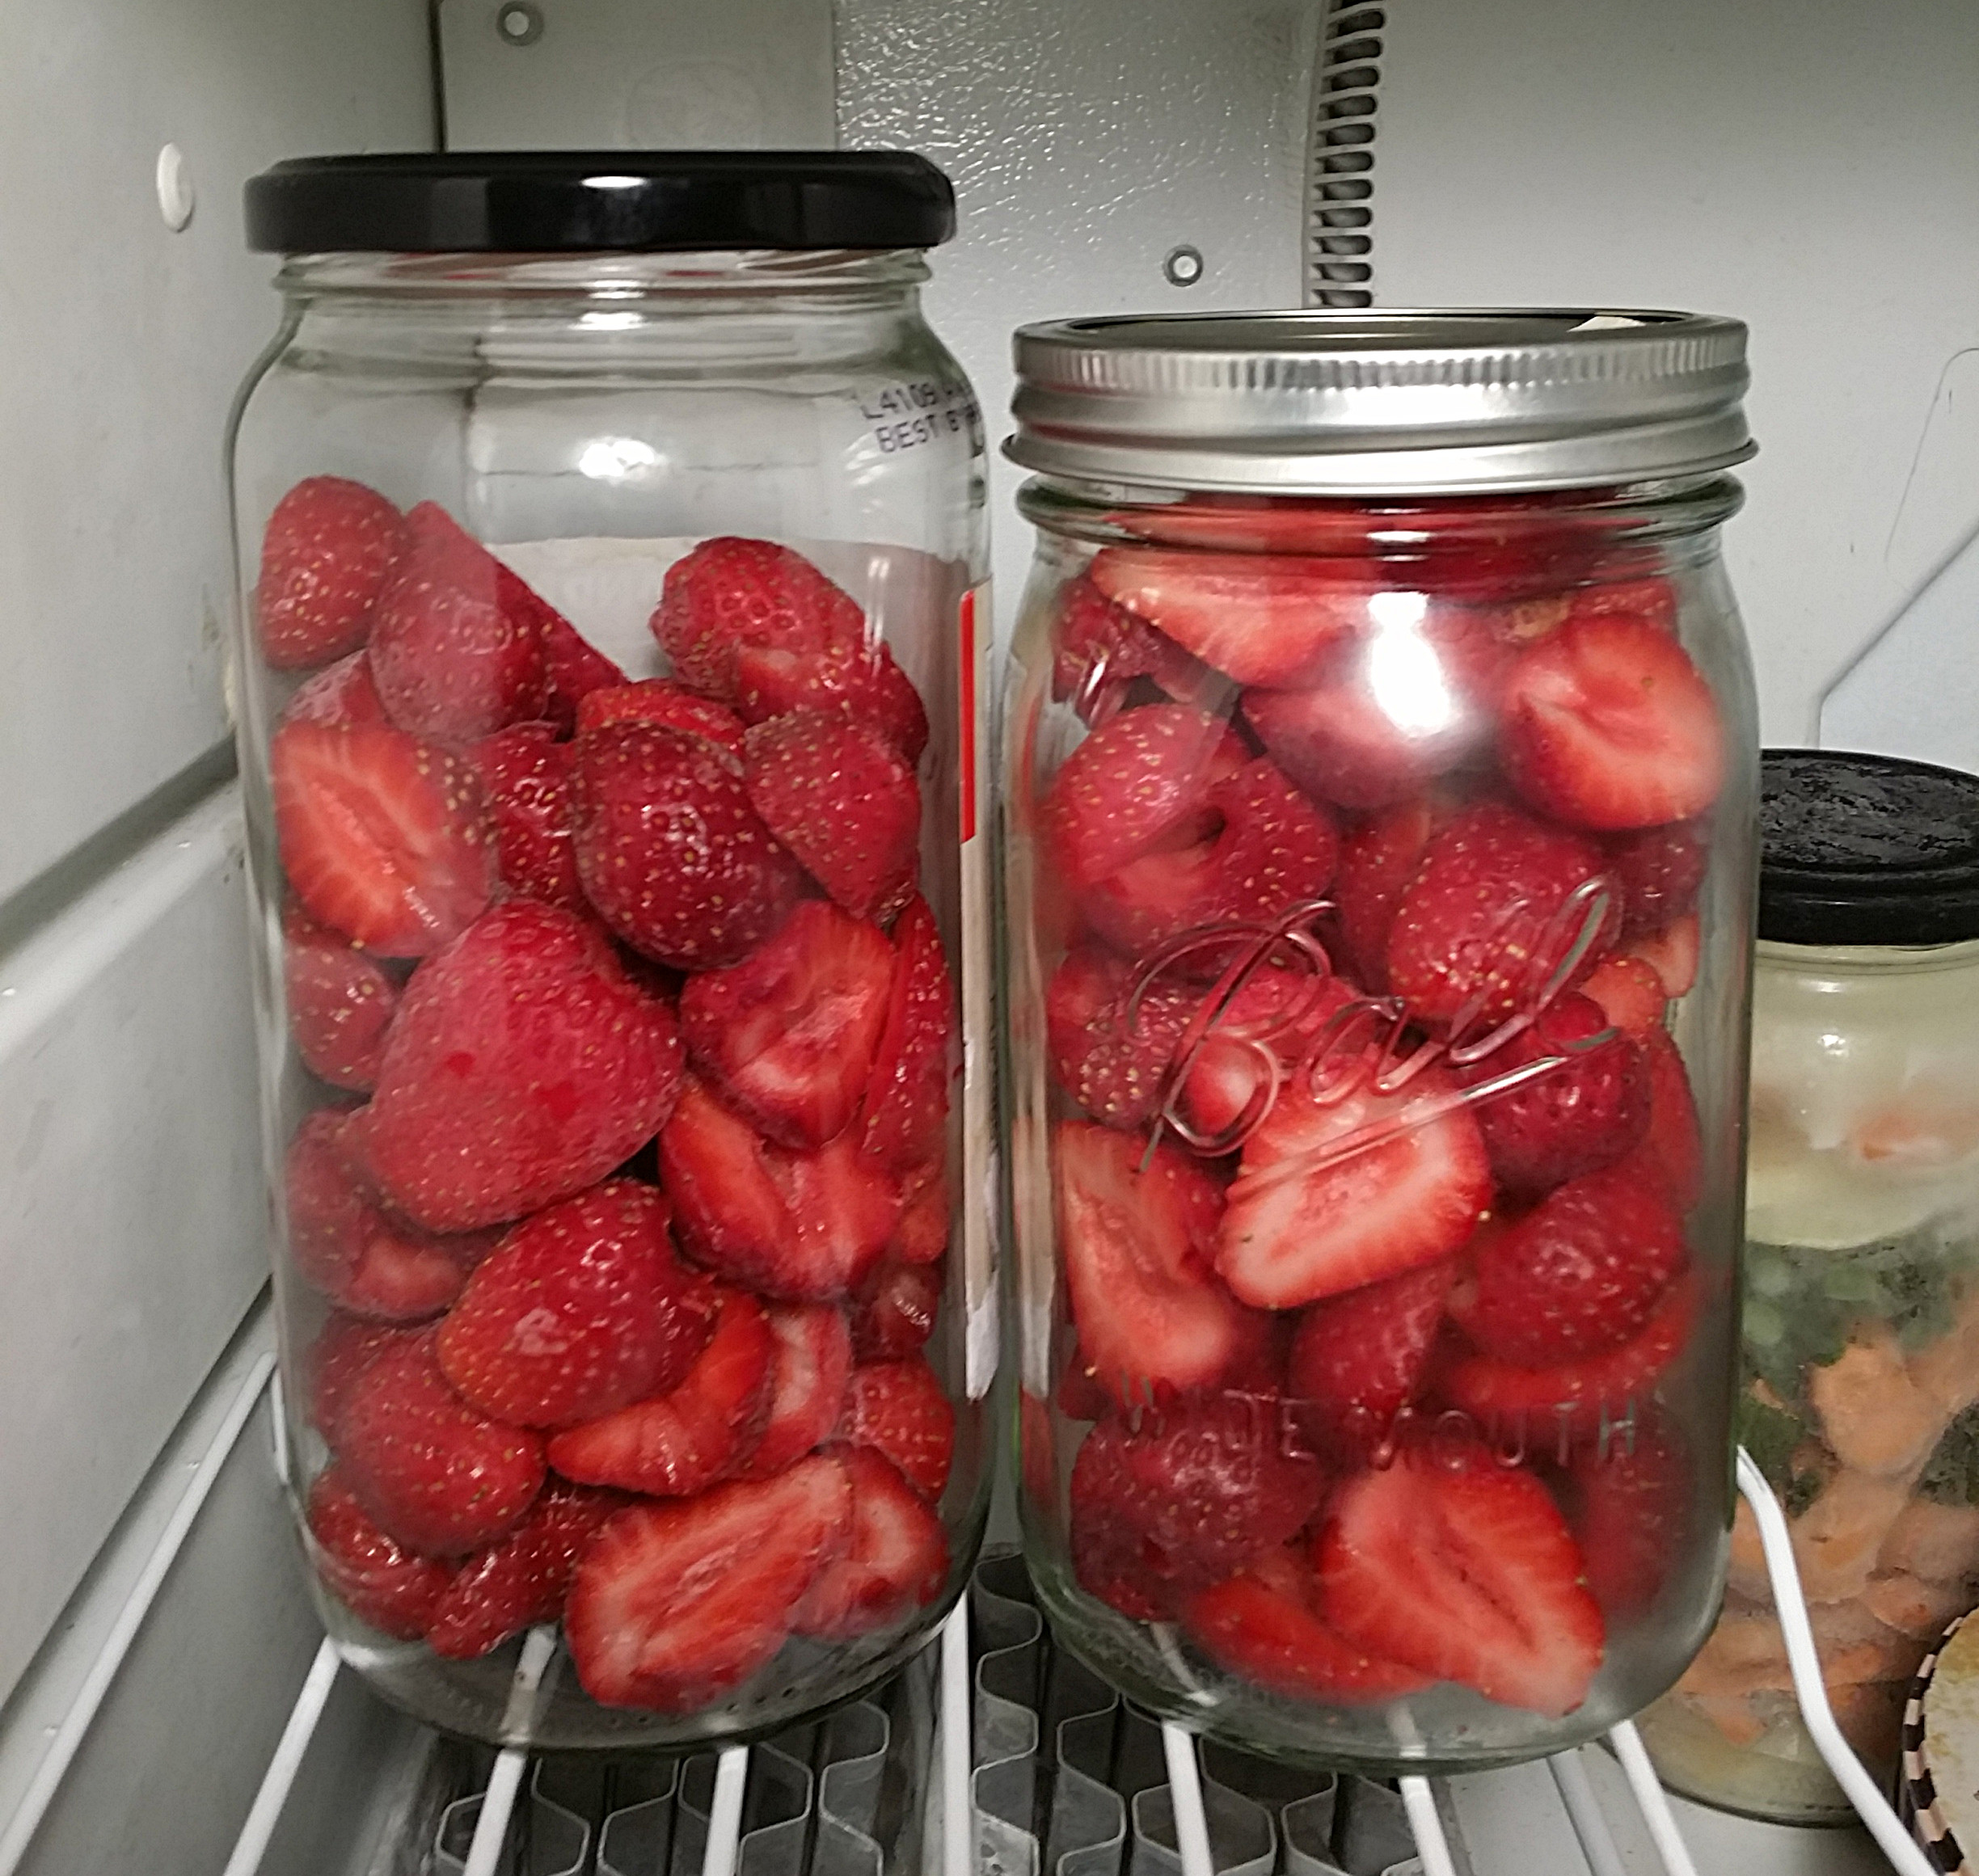 strawberries in jars